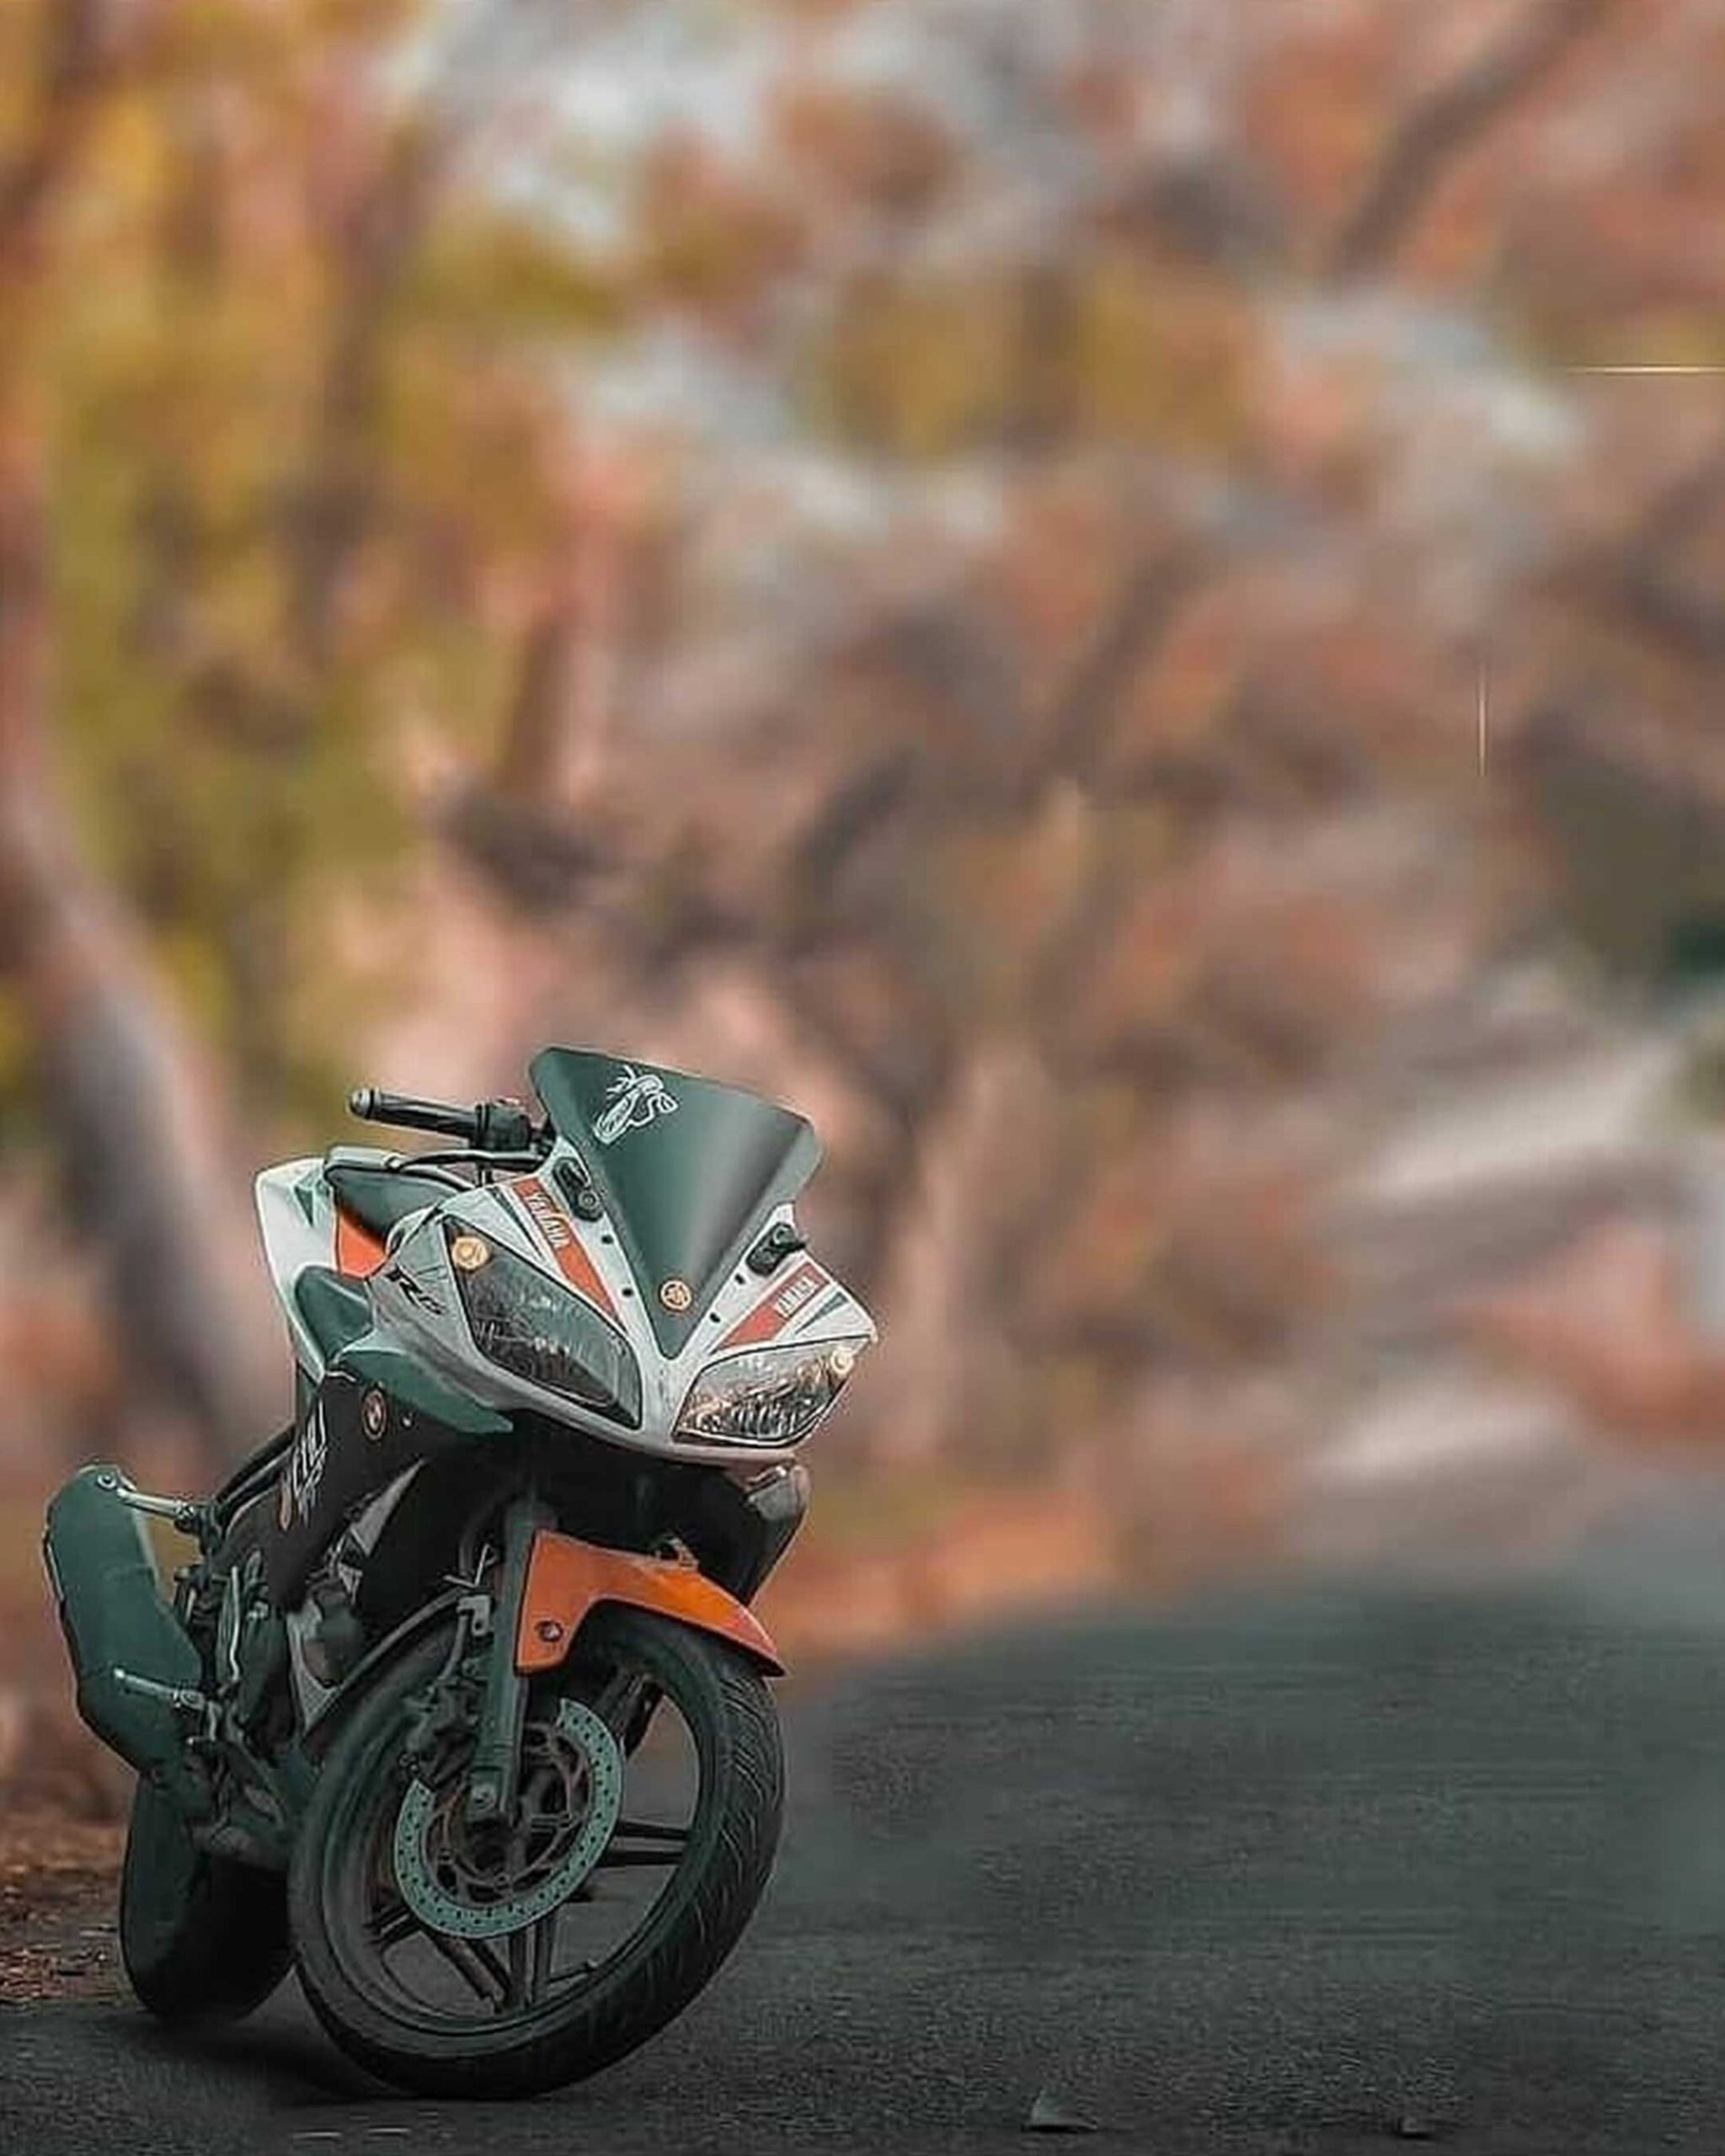 Yamaha R15 Bike Snapseed Background Free Stock Image